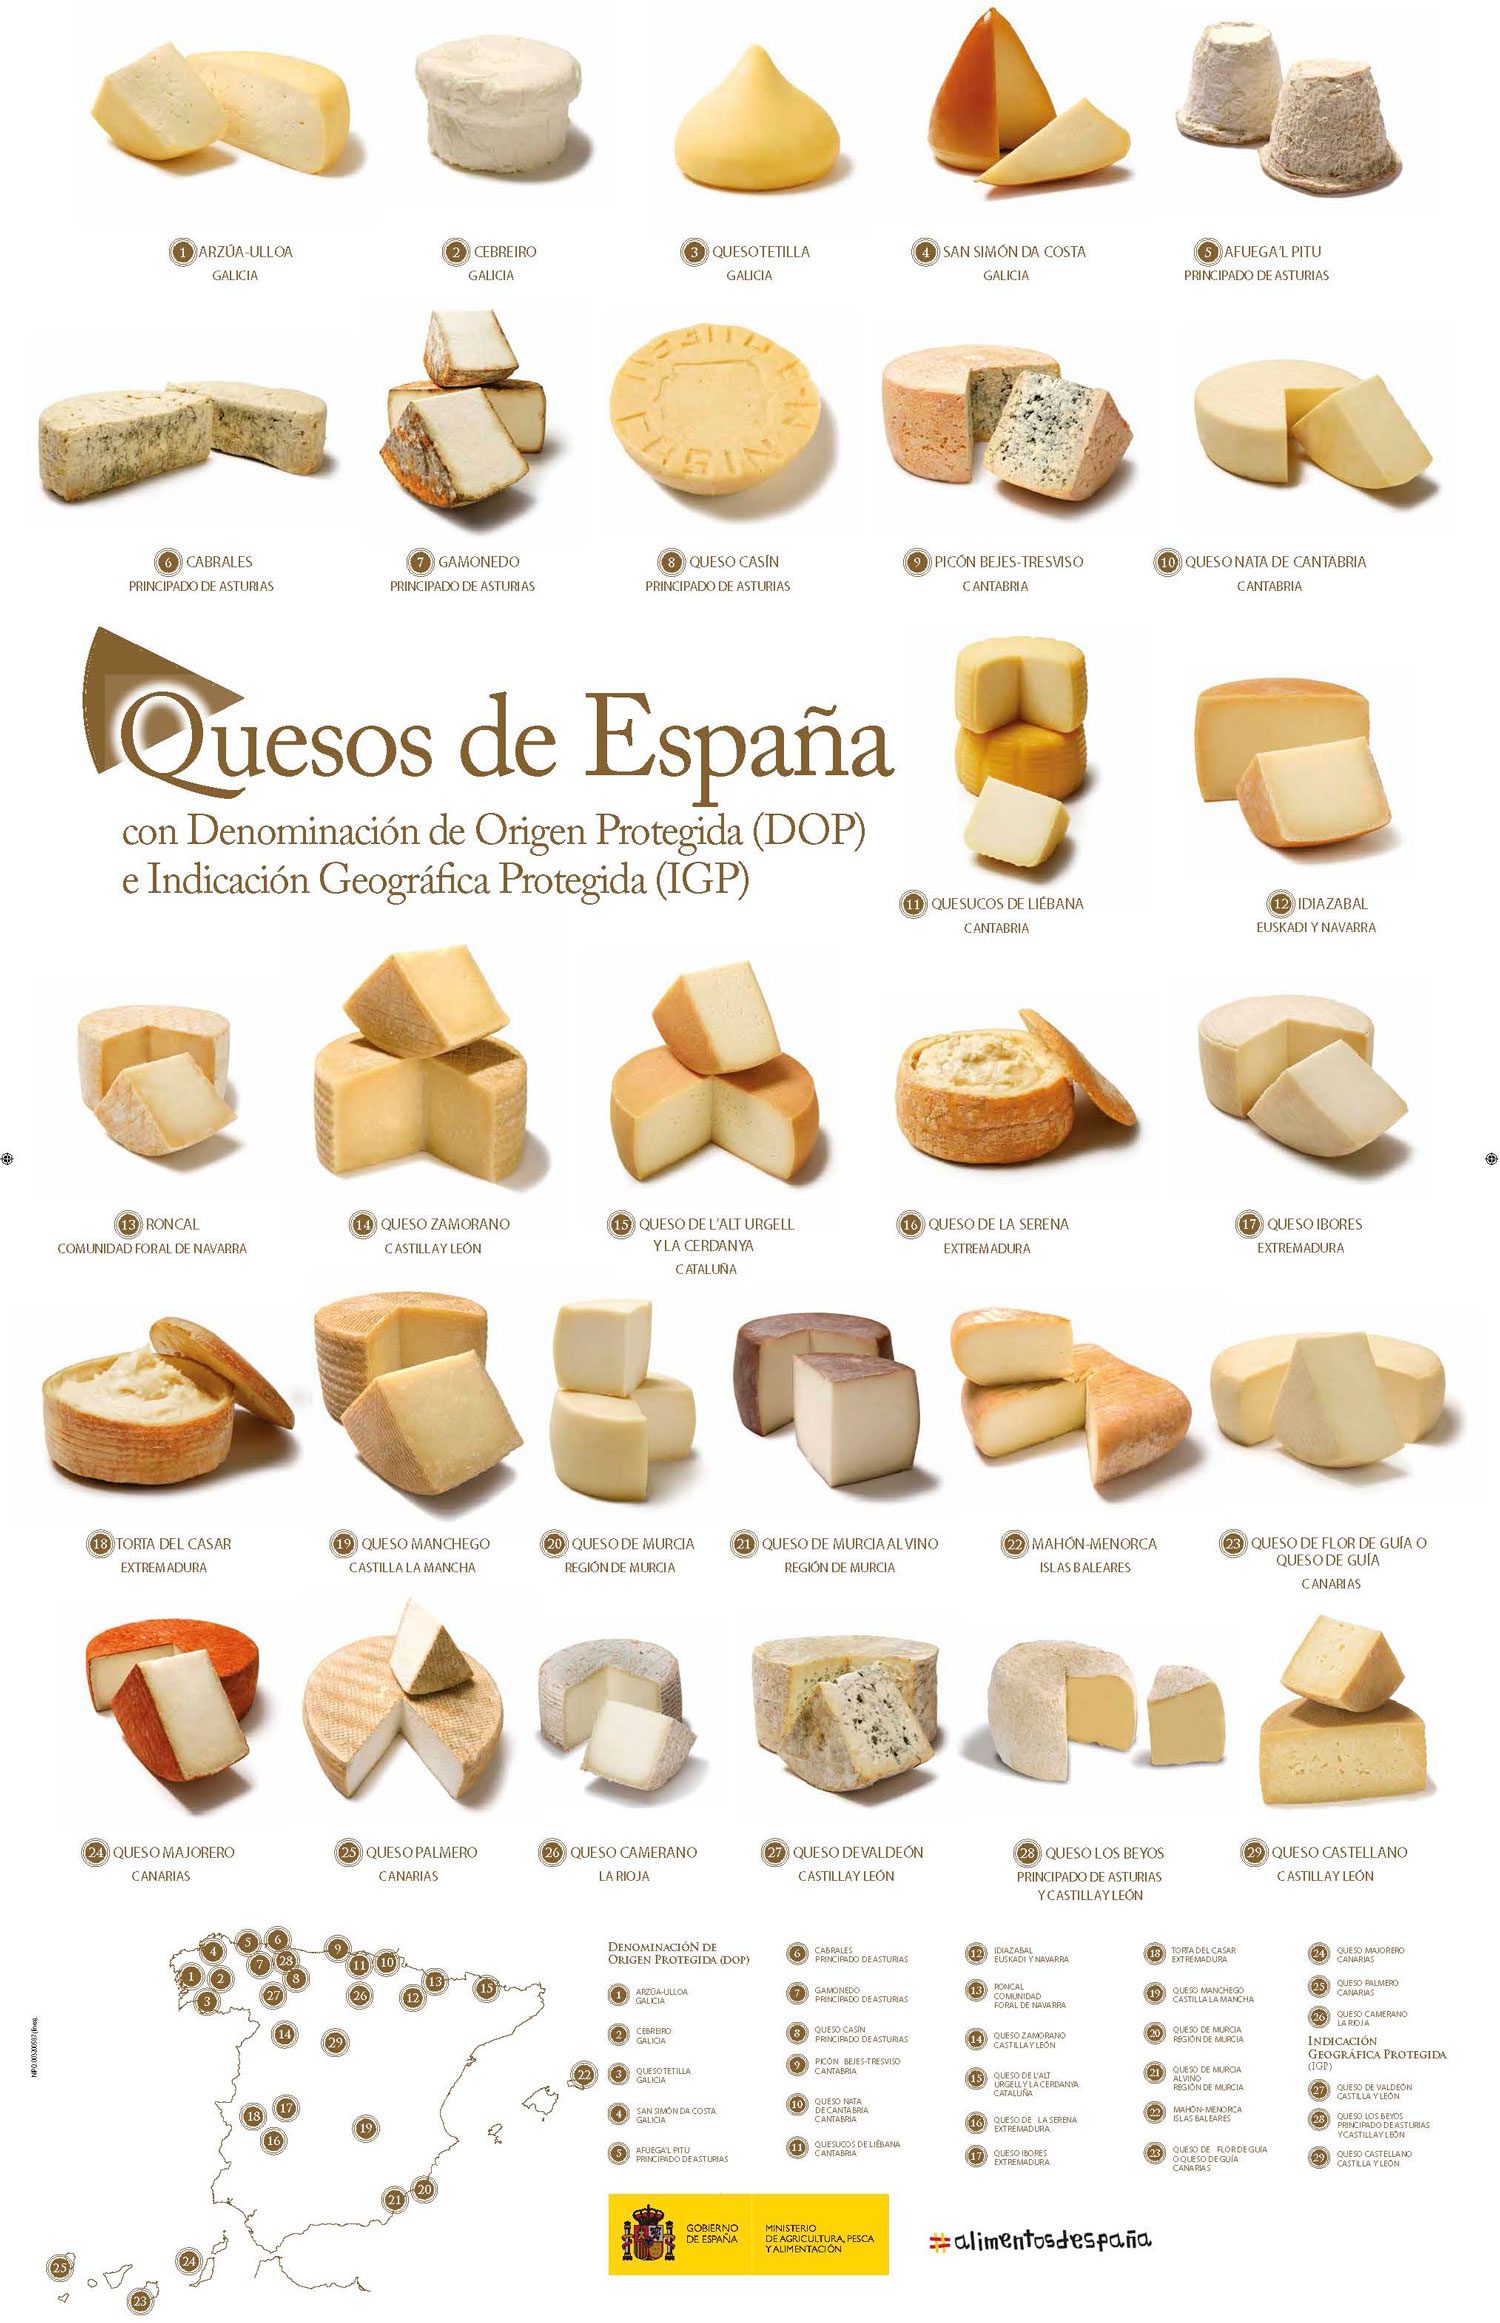 Los sellos de calidad de los quesos en España